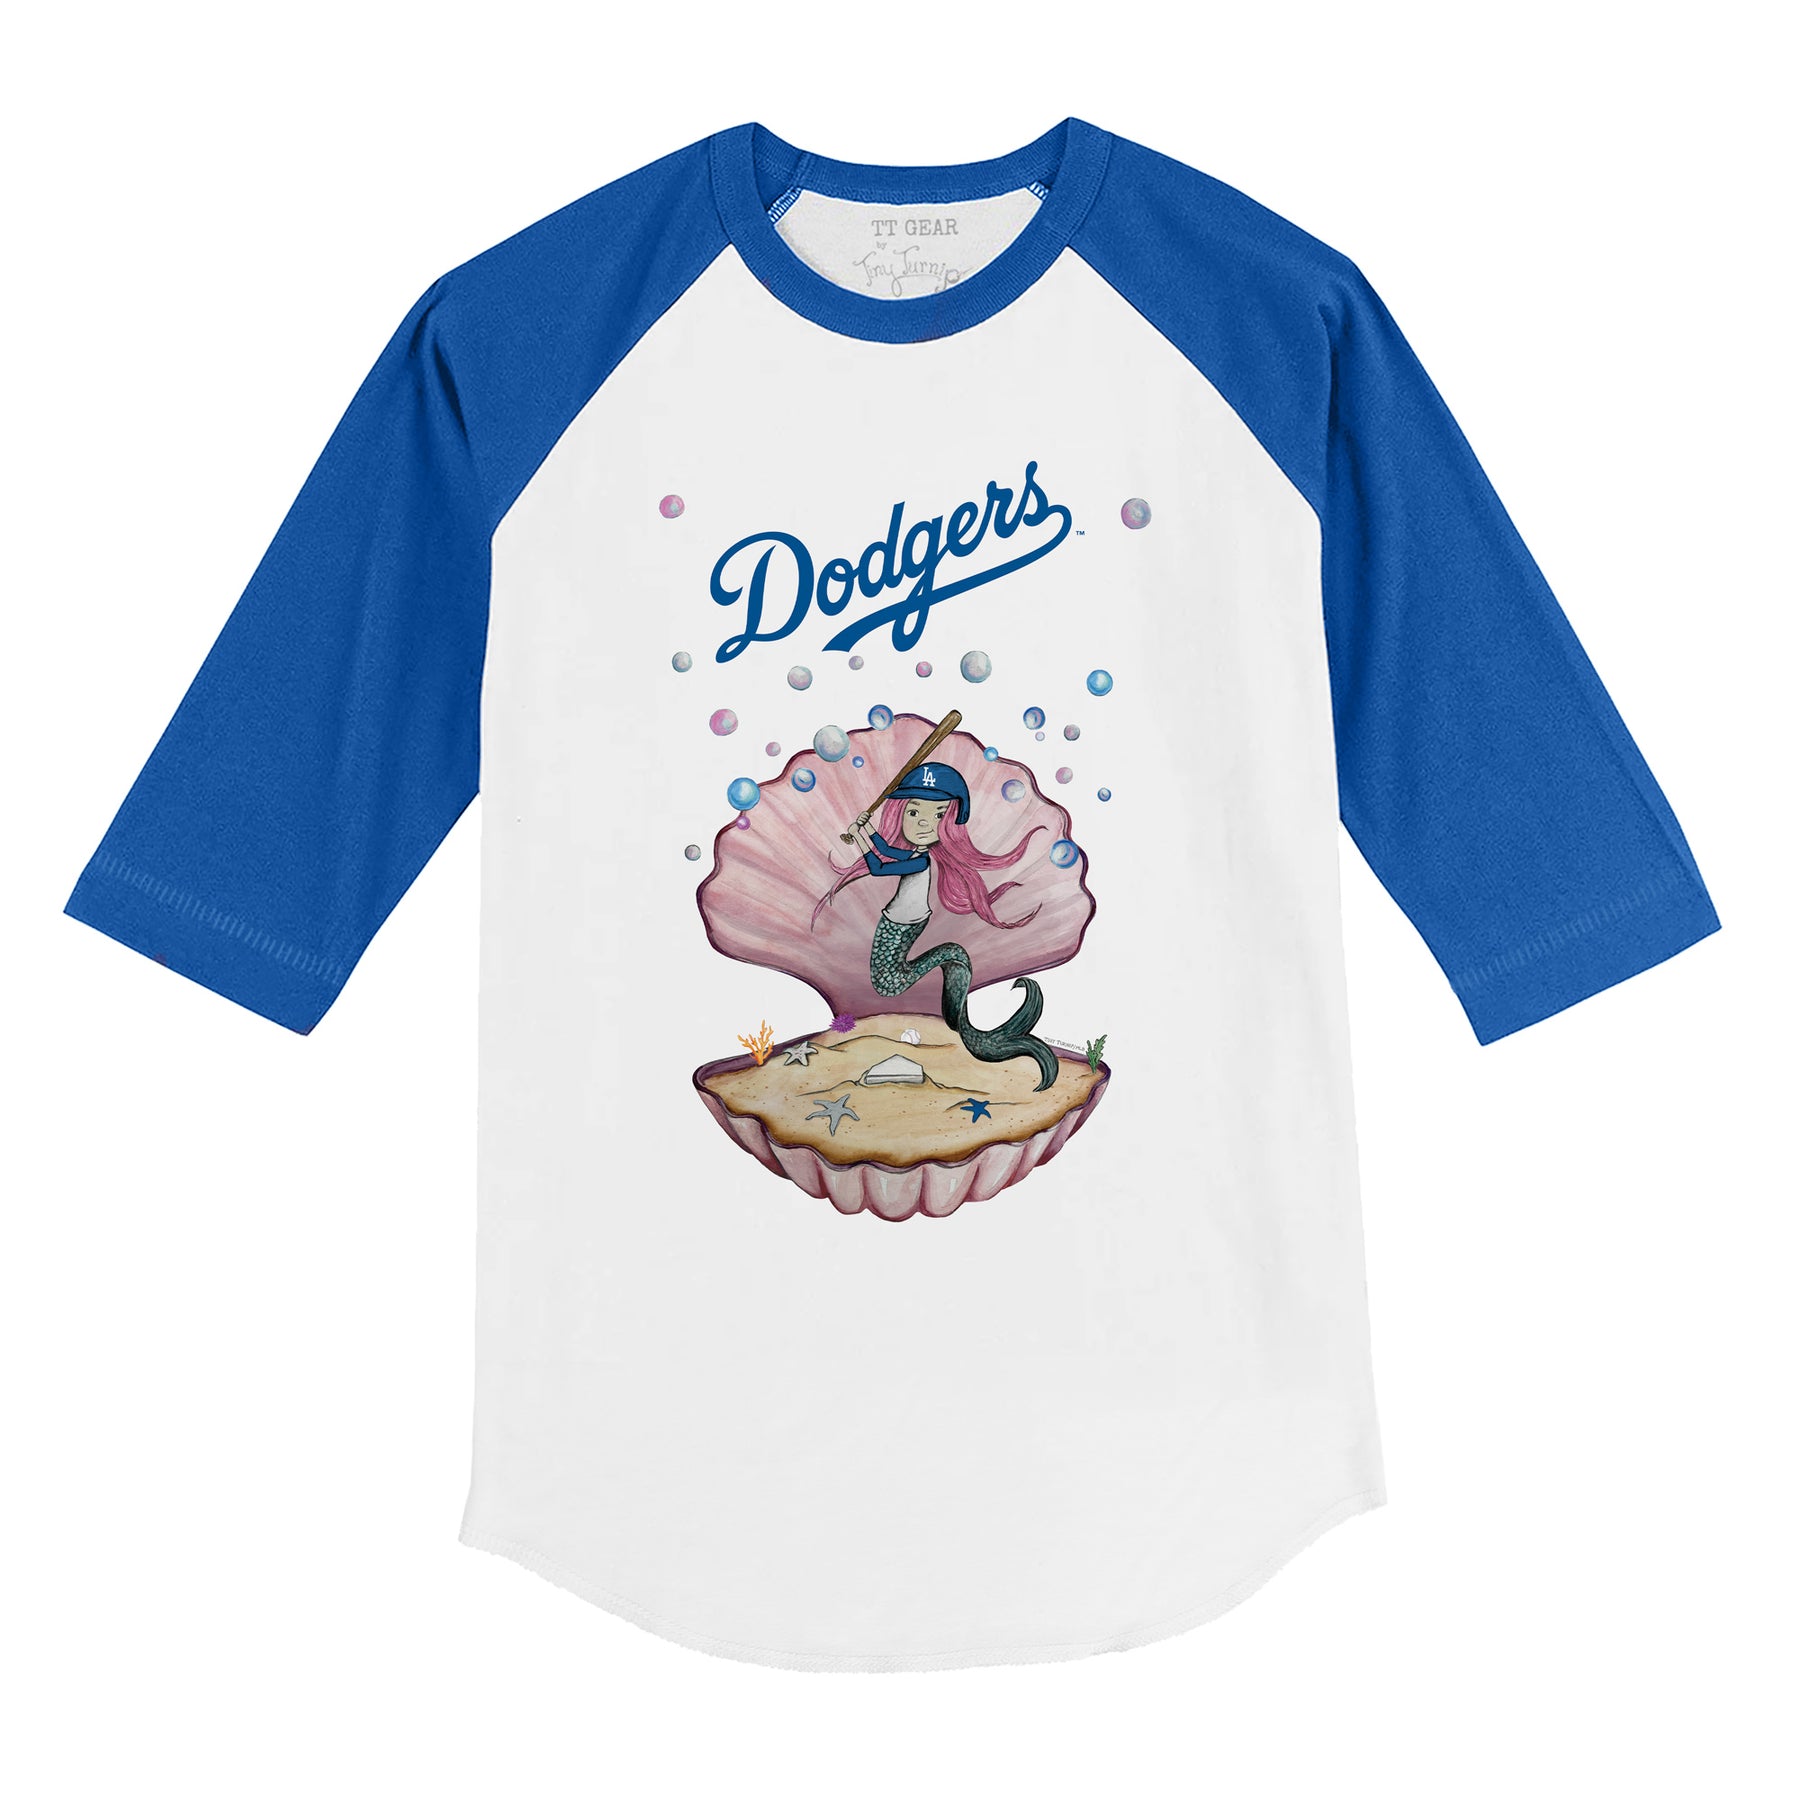 Los Angeles Dodgers Mermaid 3/4 Royal Blue Sleeve Raglan